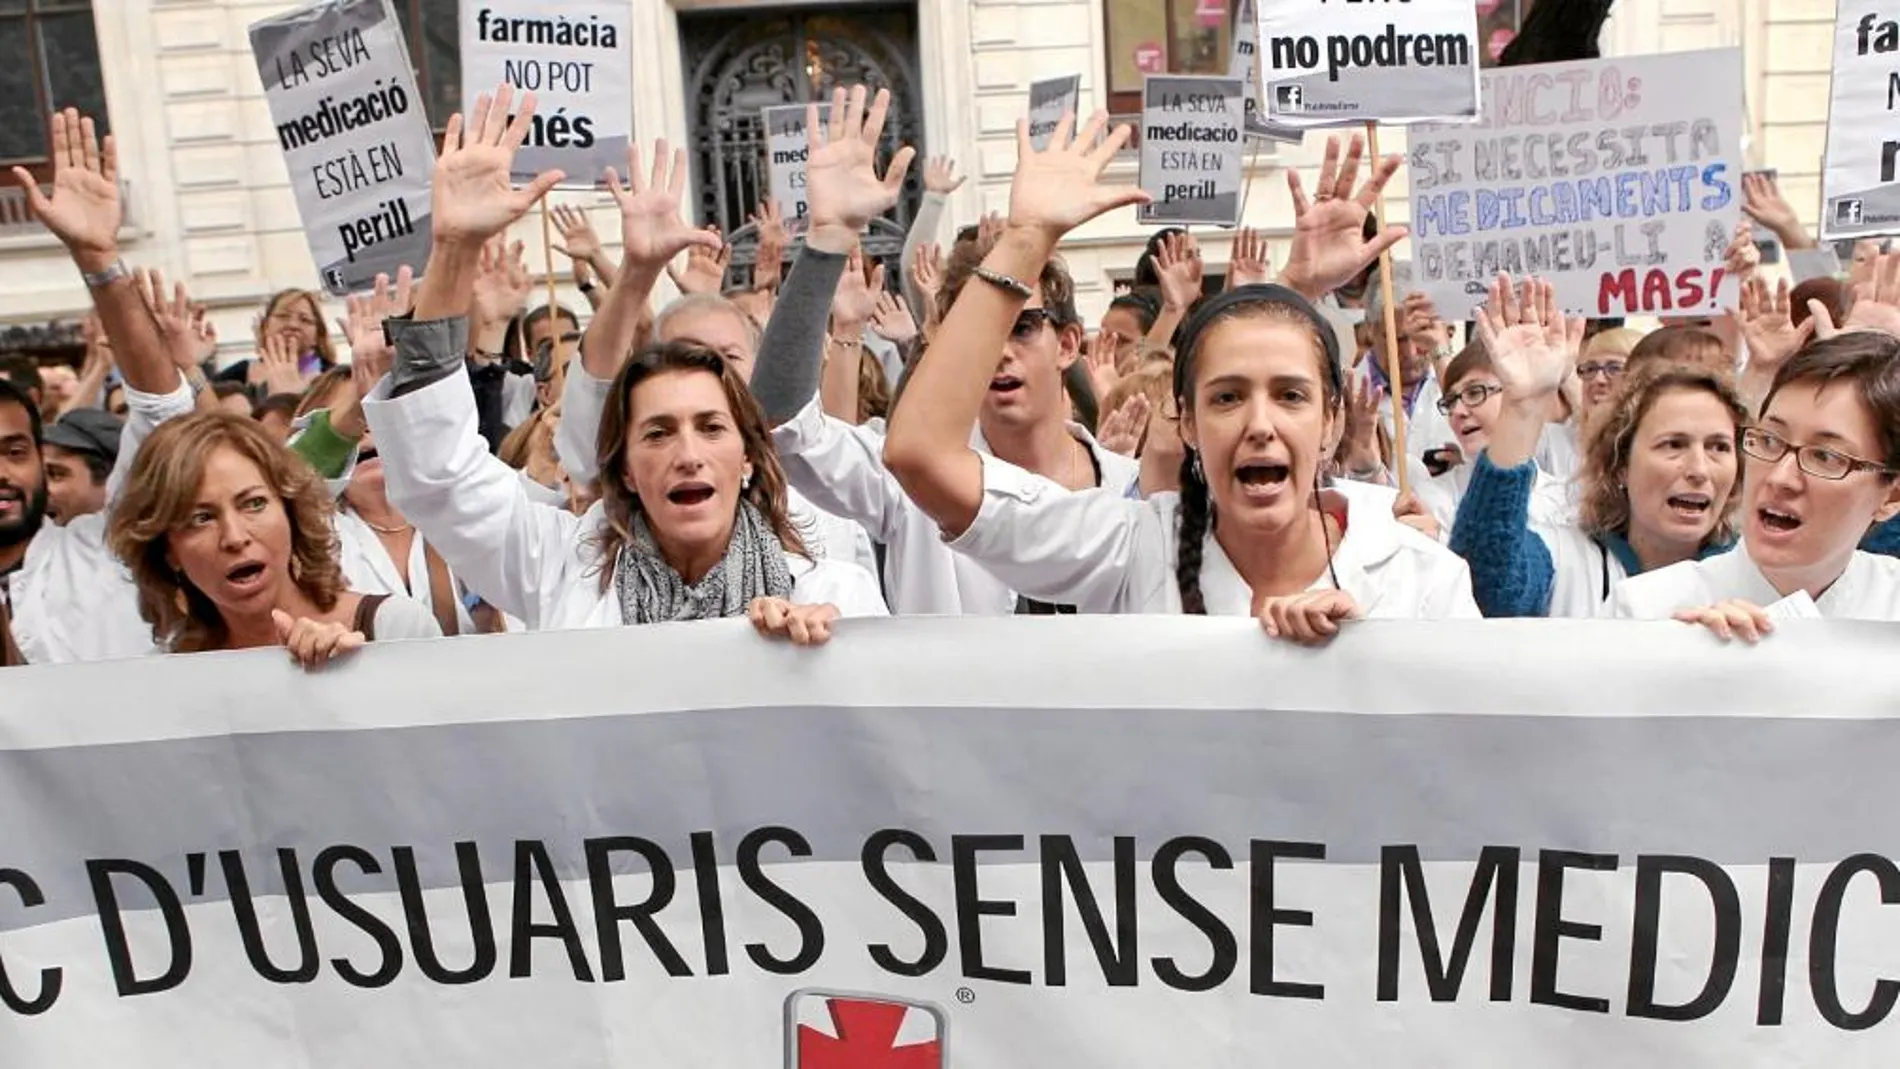 Más de 2.000 farmacéuticos protagonizaron una protesta el pasado mes de marzo en la plaza Sant Jaume